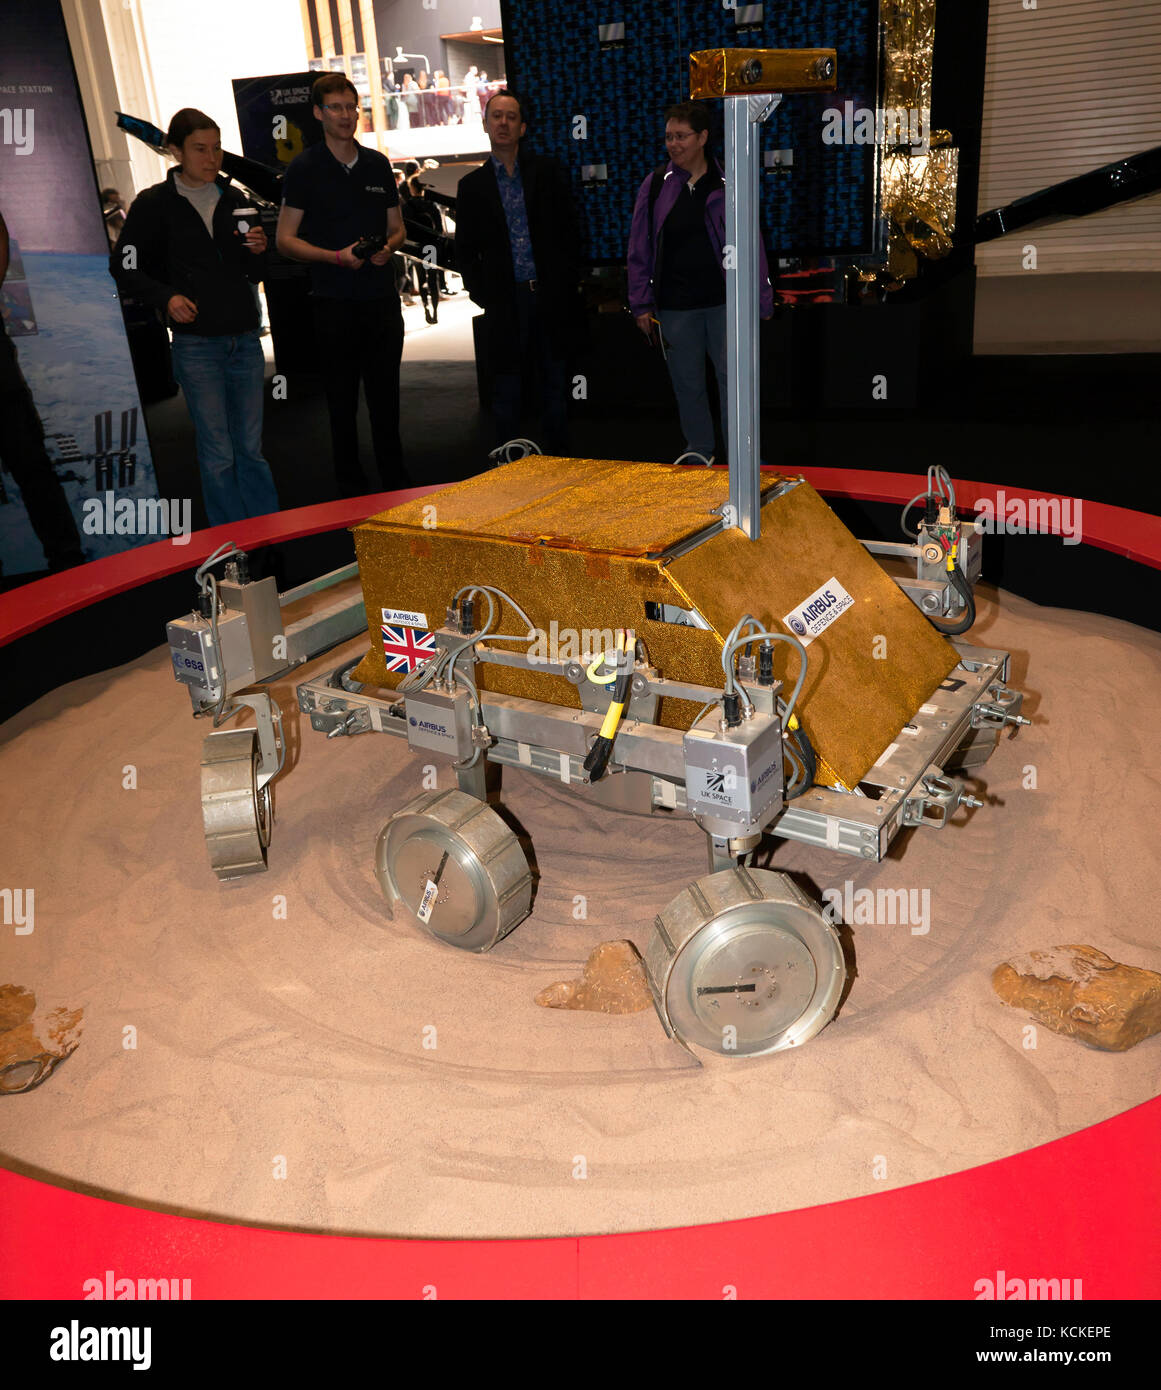 Mars Rover prototipo realizado por Airbus, en colaboración con la agencia espacial europea, en la exhibición en New Scientist live 2017 Foto de stock